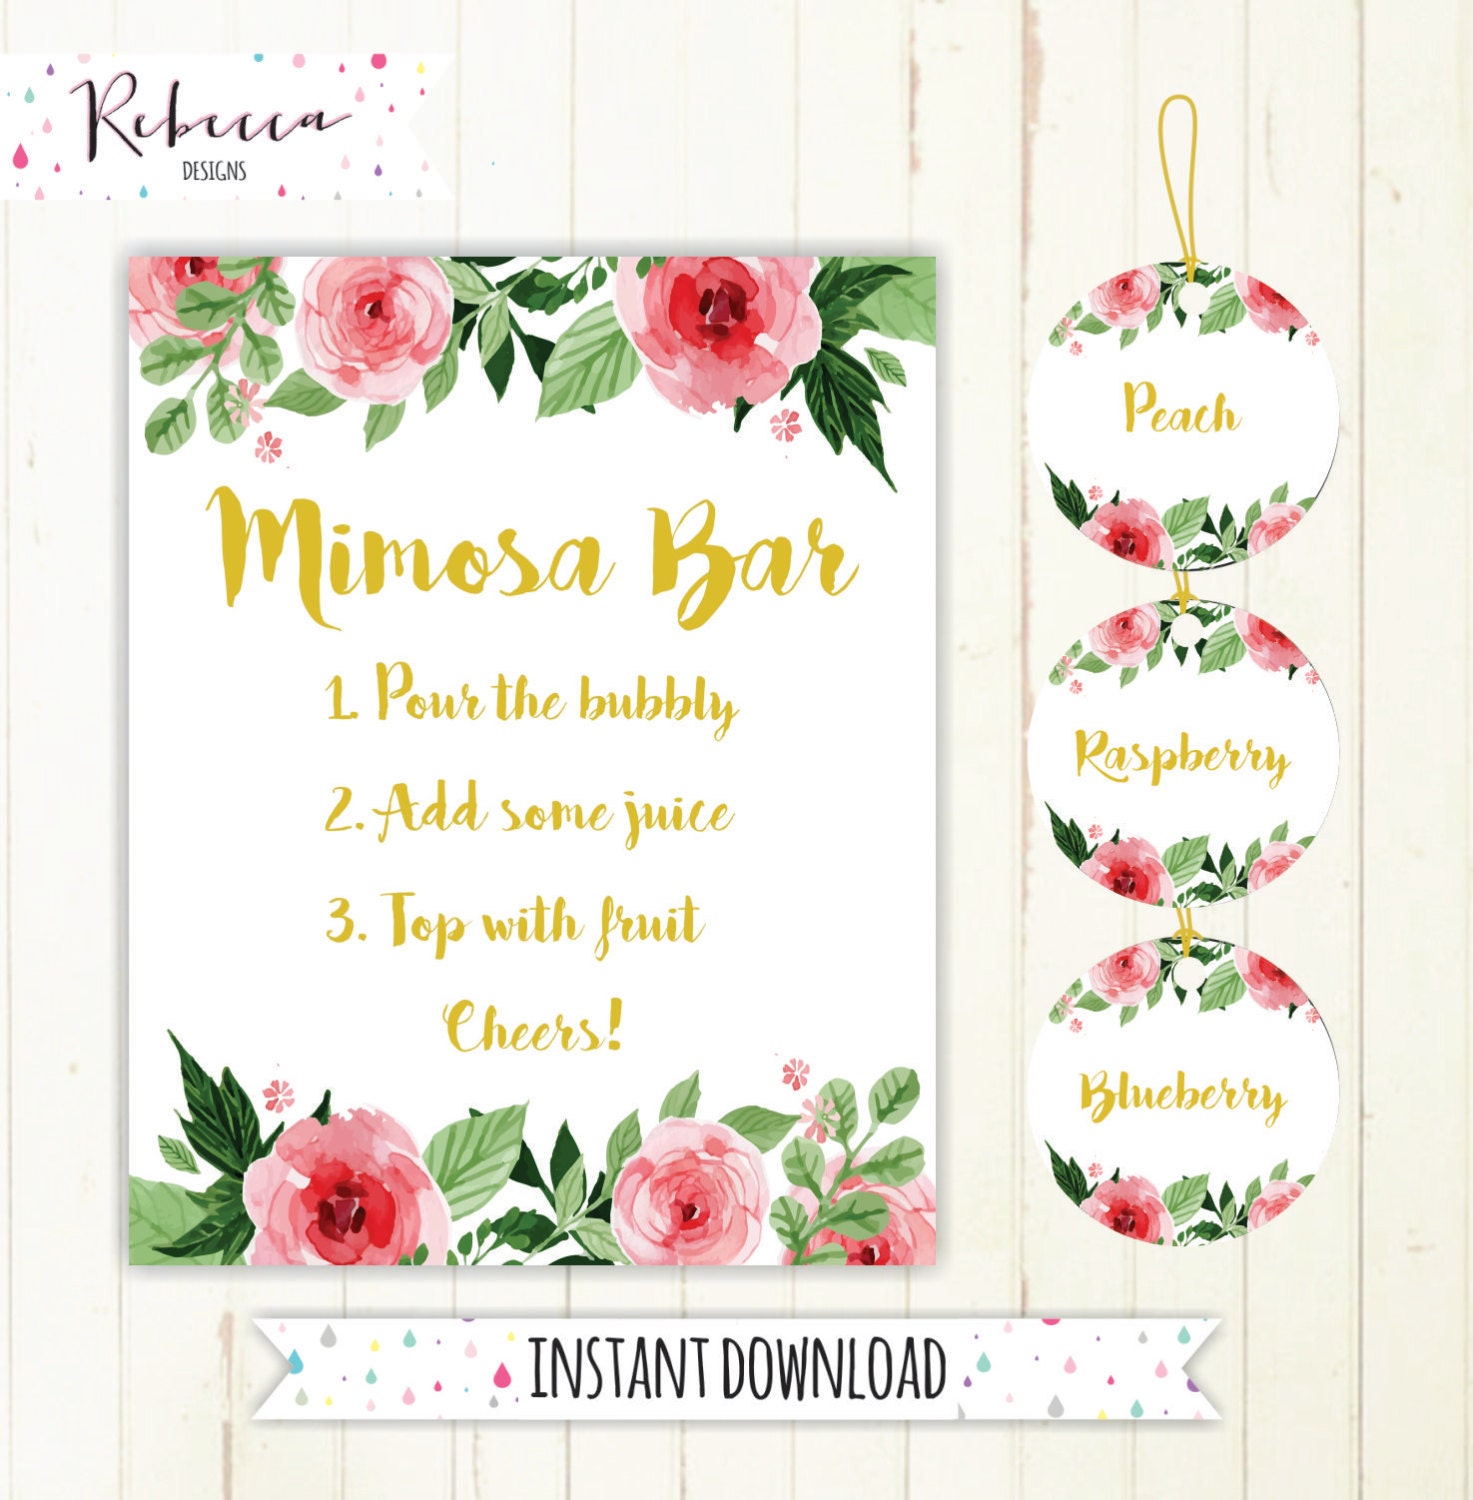 mimosa-bar-sign-juice-labels-mimosa-bar-printable-sign-floral